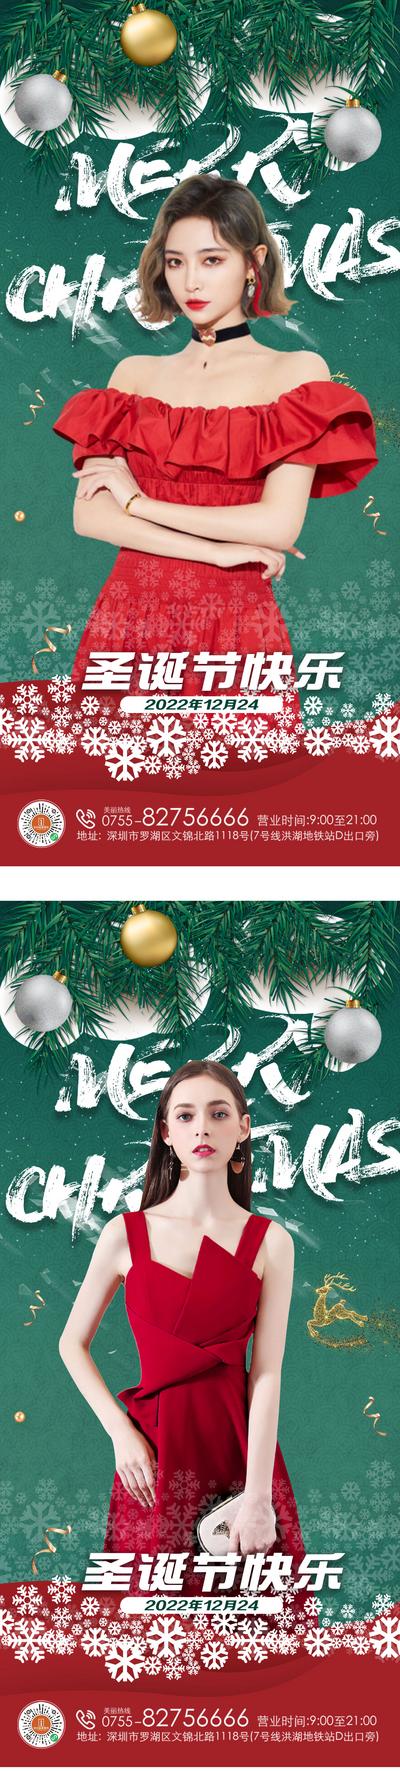 南门网 广告 海报 医美 人物 圣诞节 系列